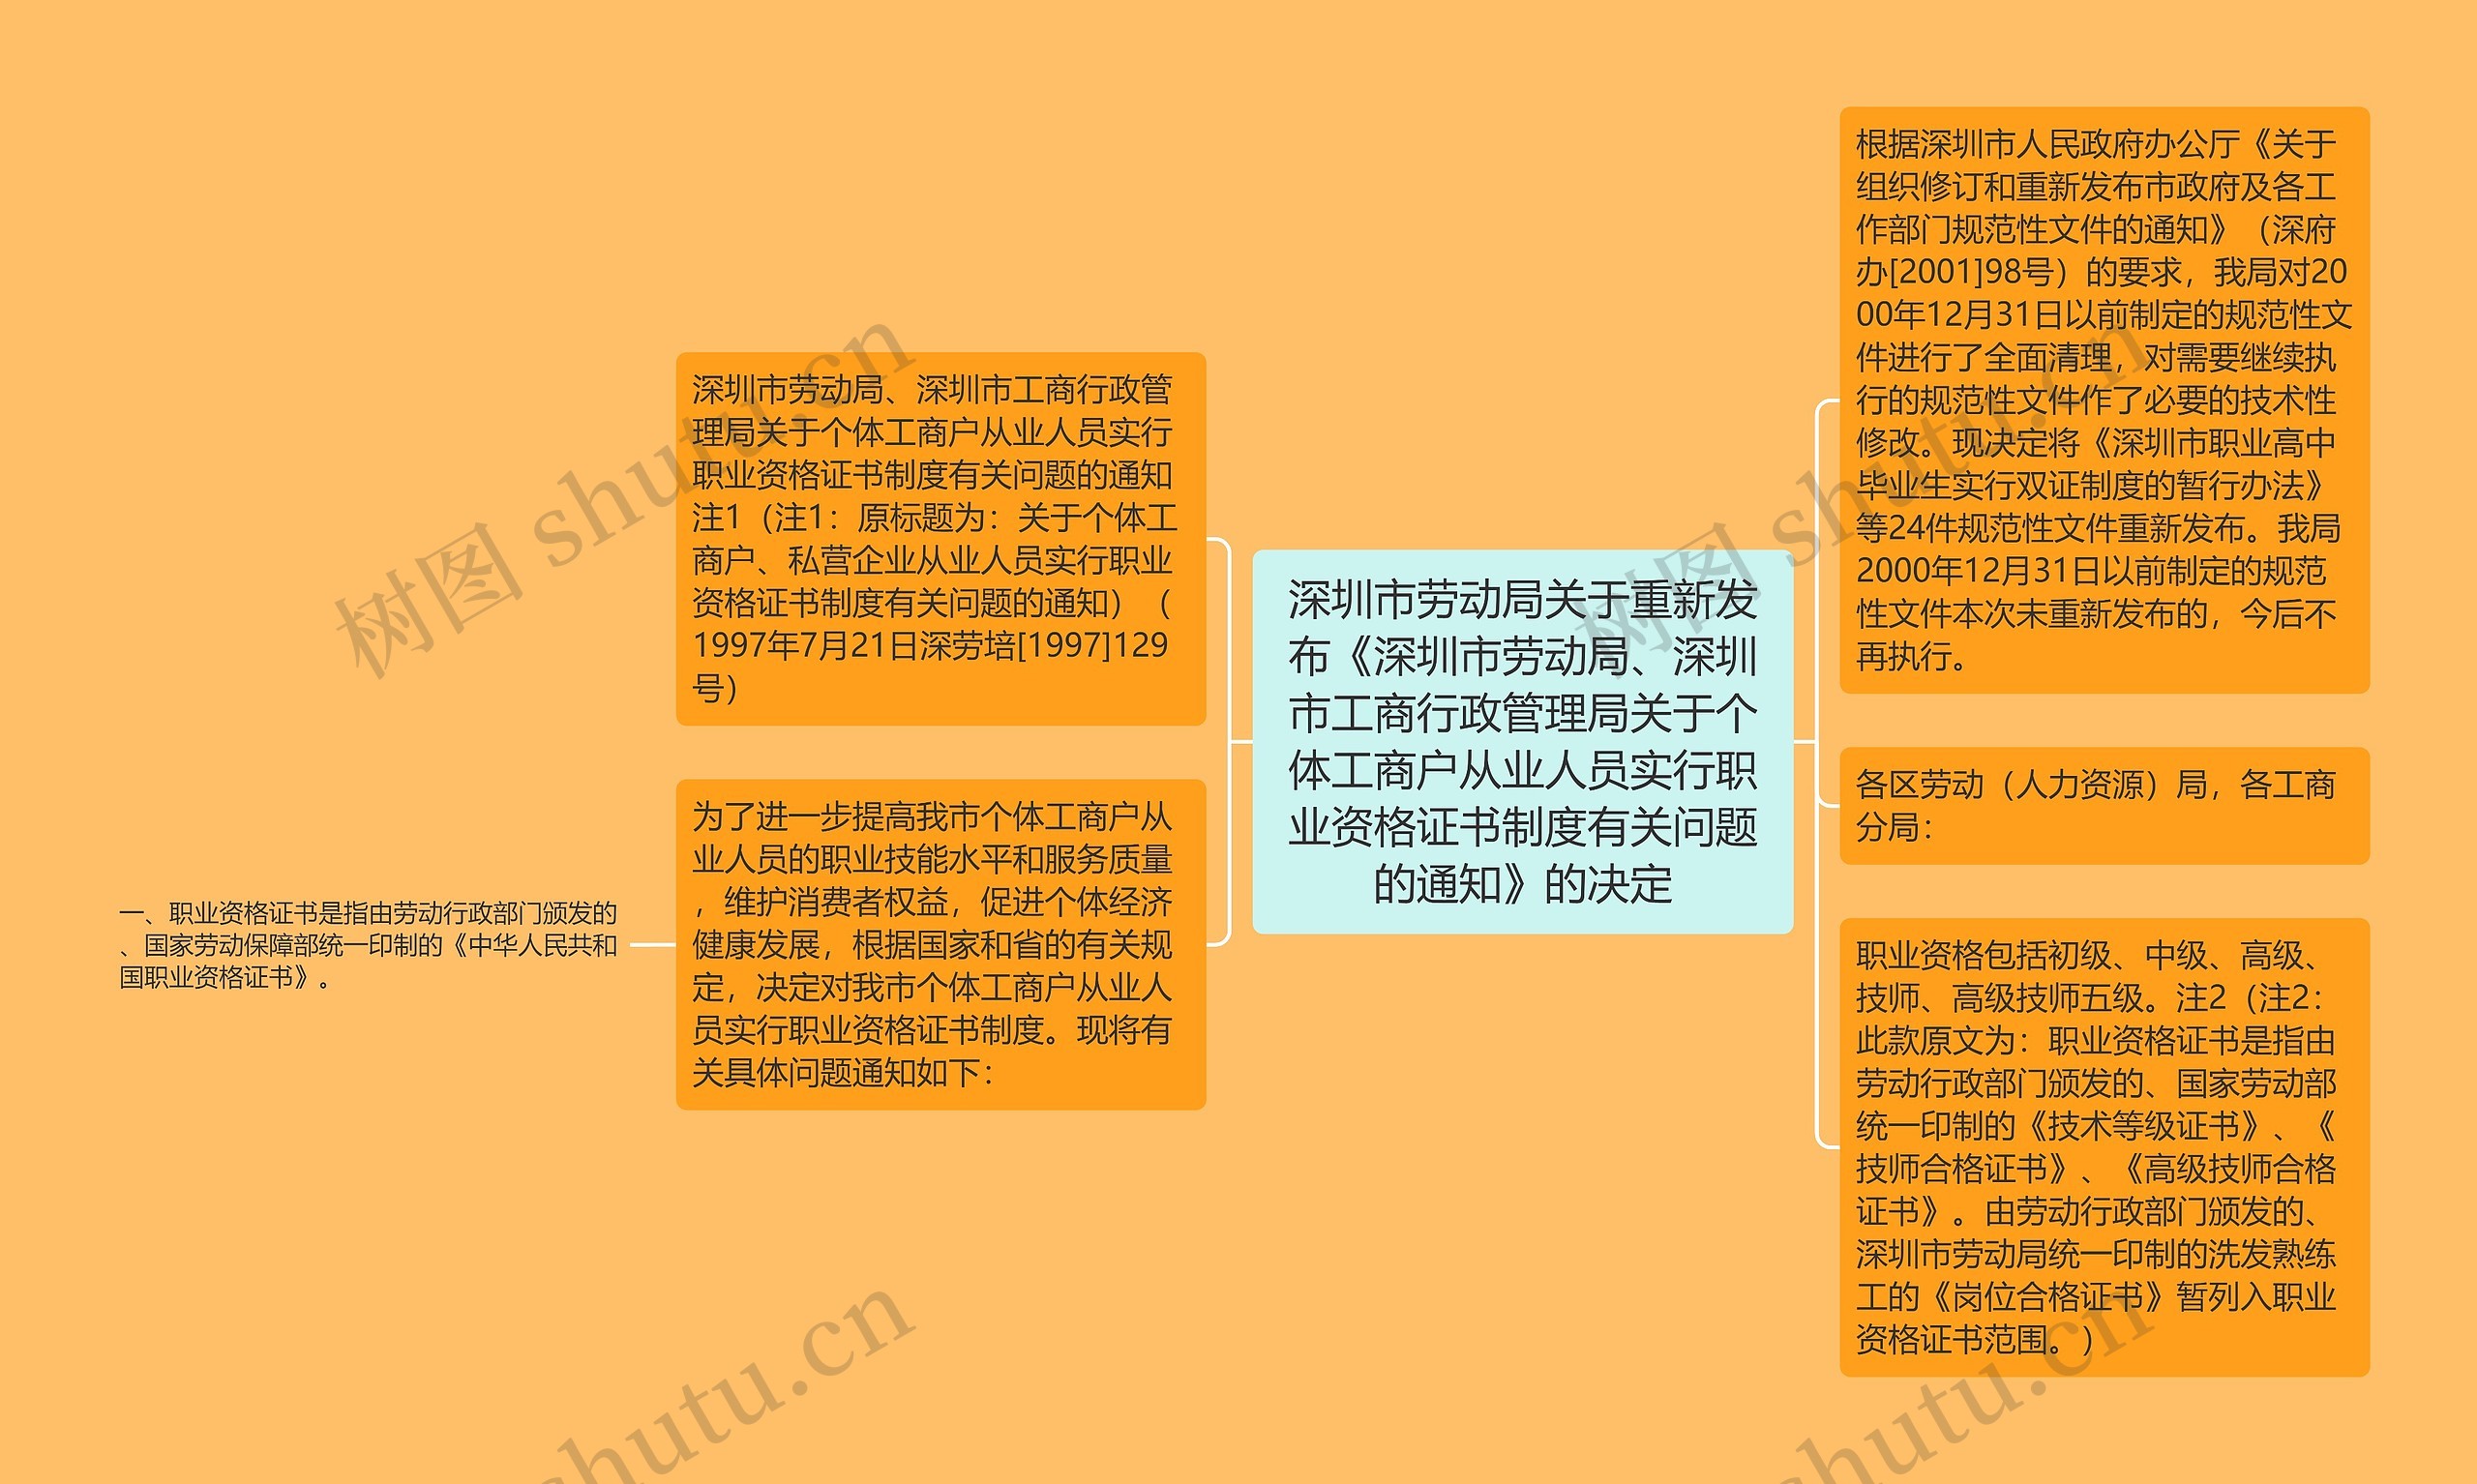 深圳市劳动局关于重新发布《深圳市劳动局、深圳市工商行政管理局关于个体工商户从业人员实行职业资格证书制度有关问题的通知》的决定